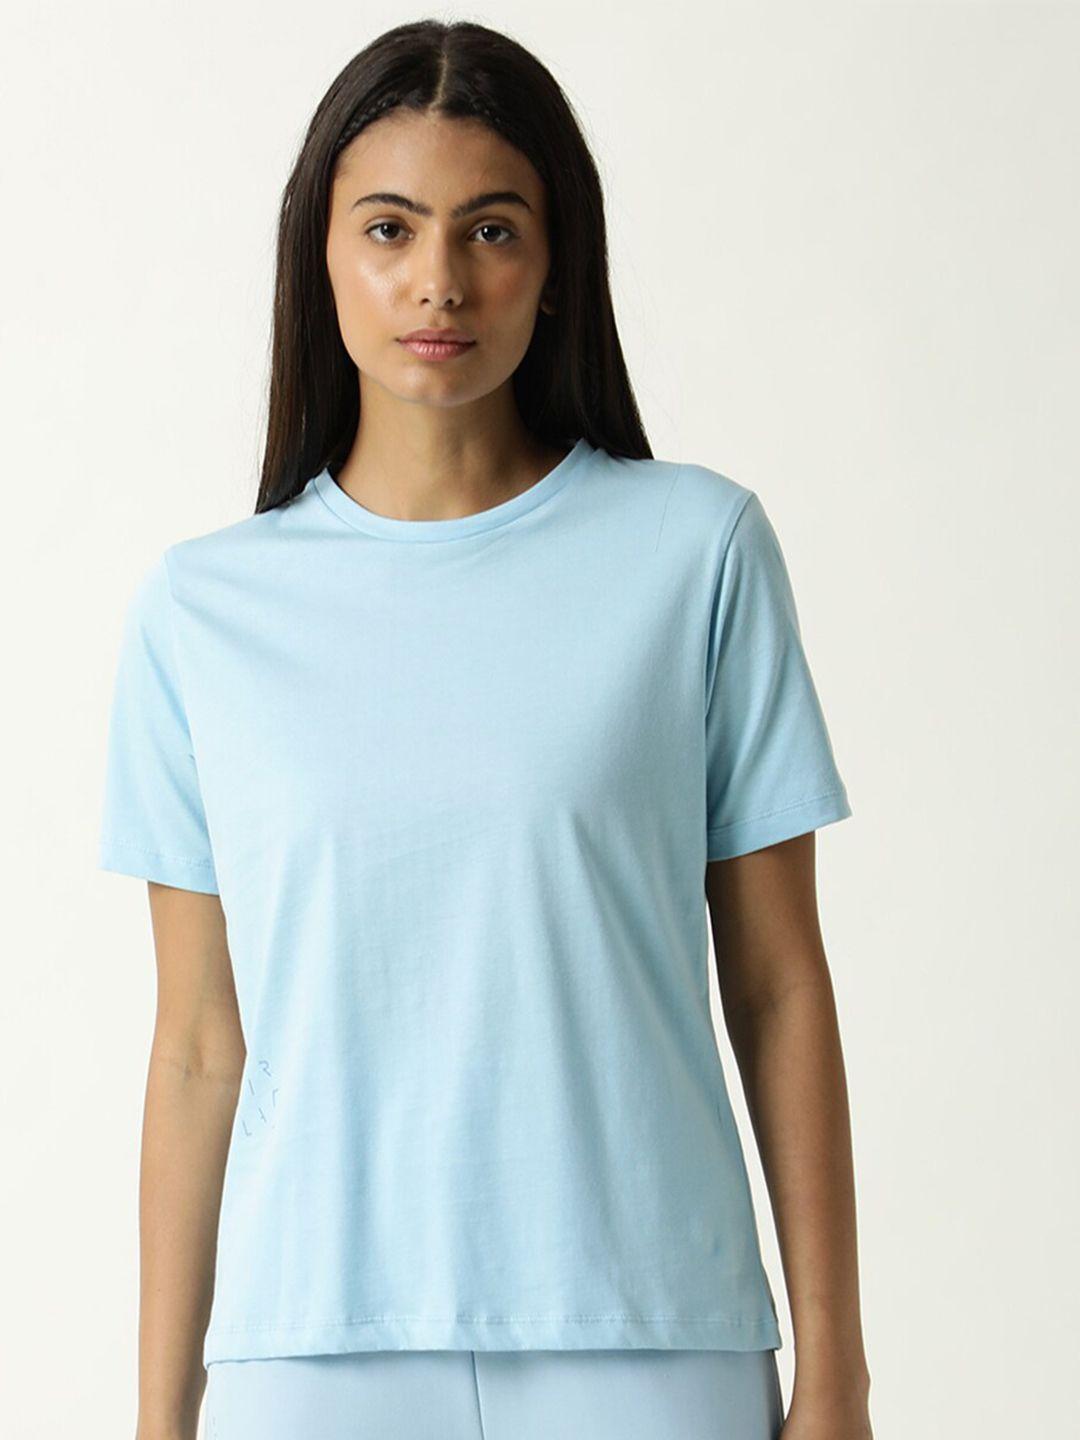 articale women blue solid slim fit cotton t-shirt